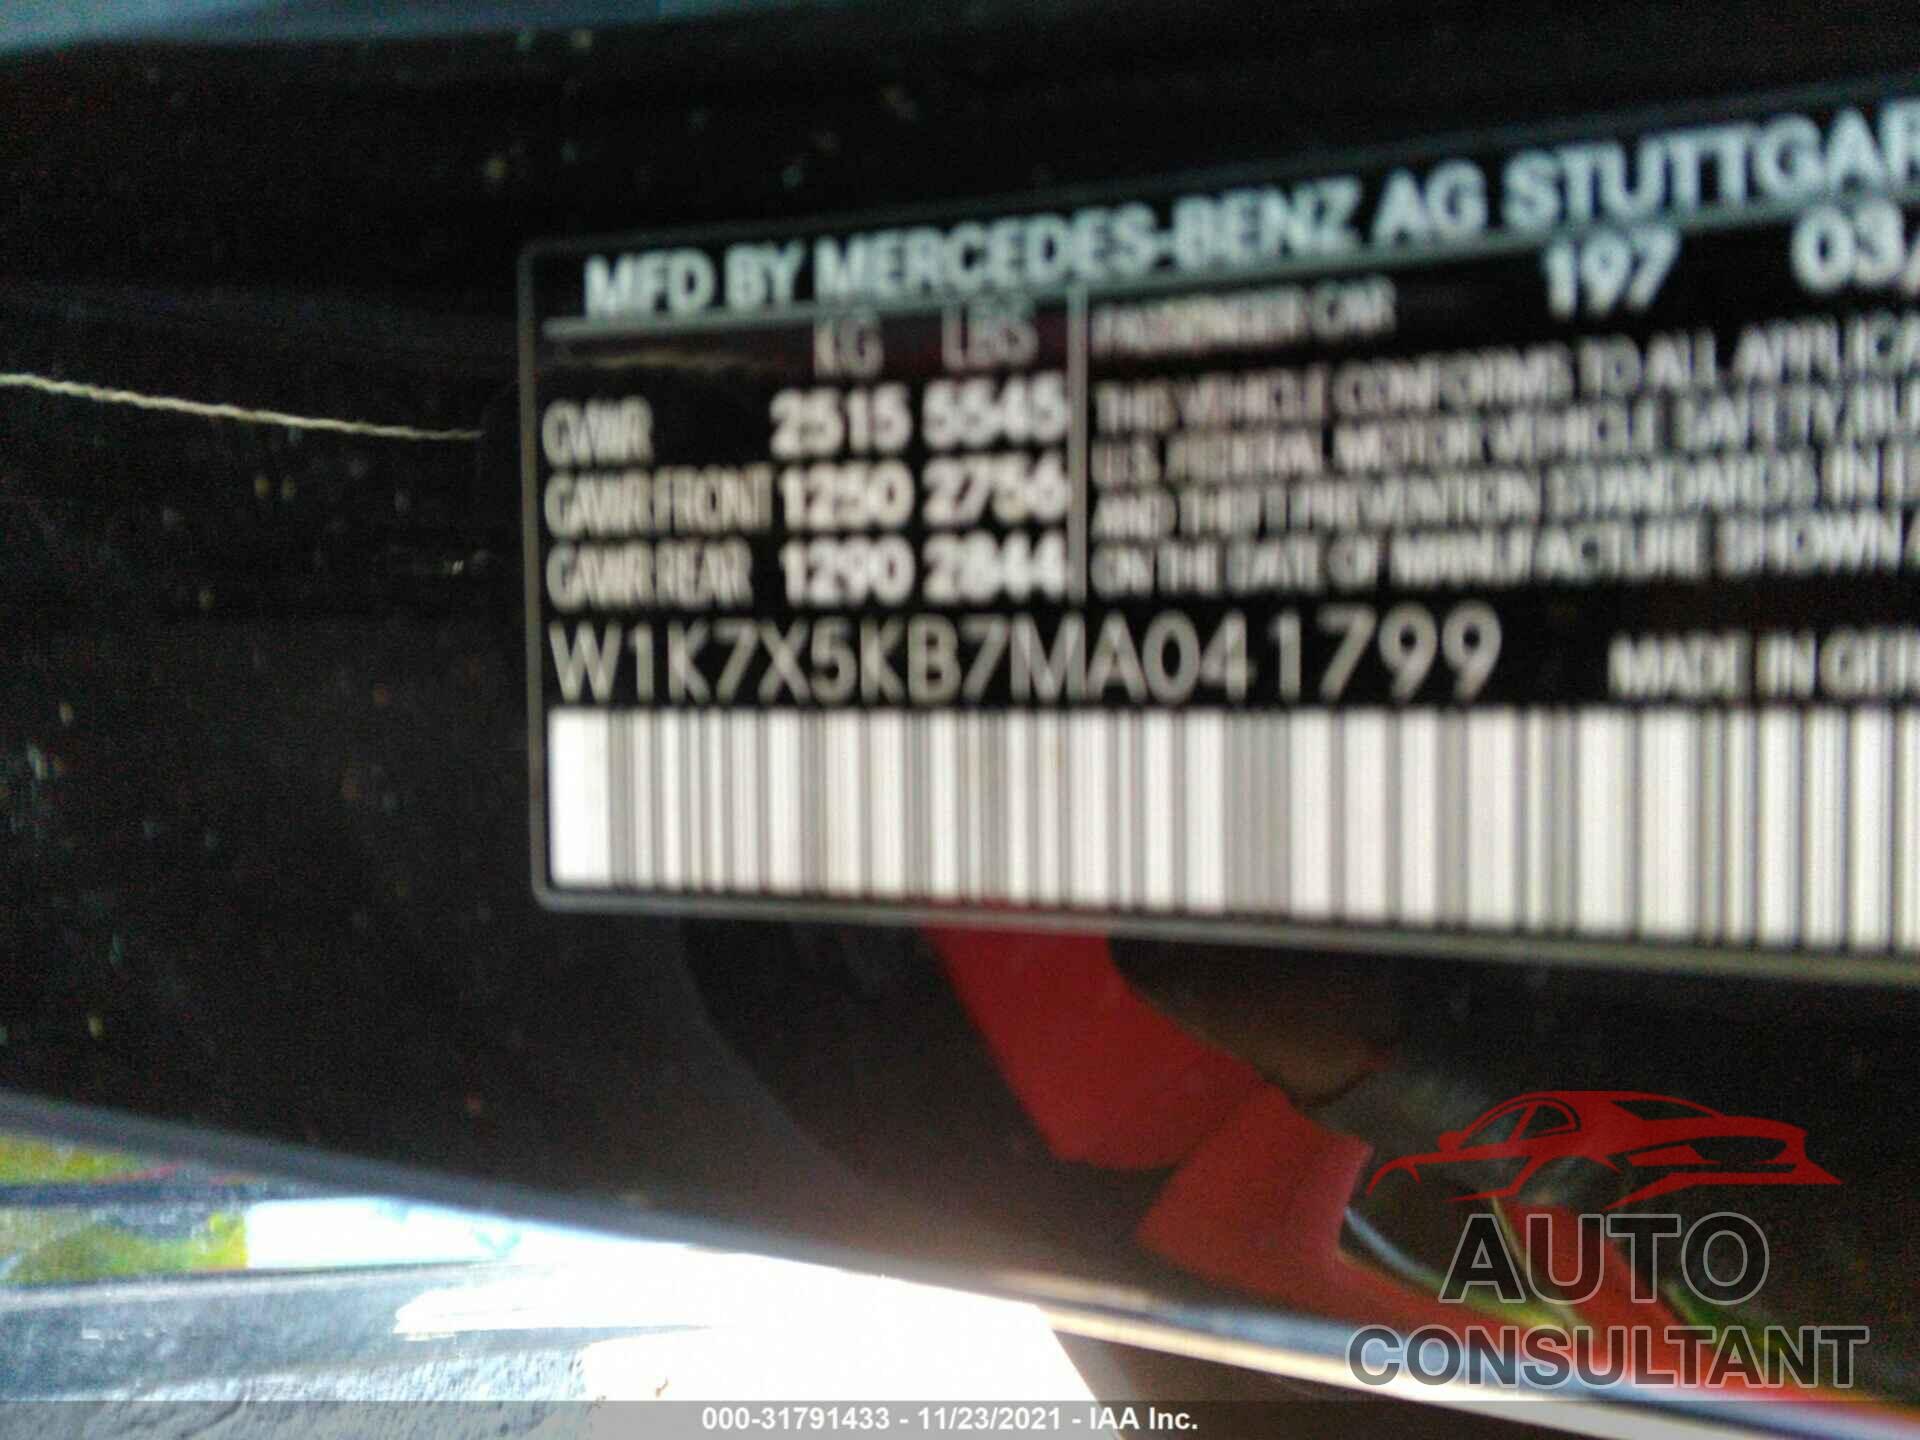 MERCEDES-BENZ AMG GT 2021 - W1K7X5KB7MA041799